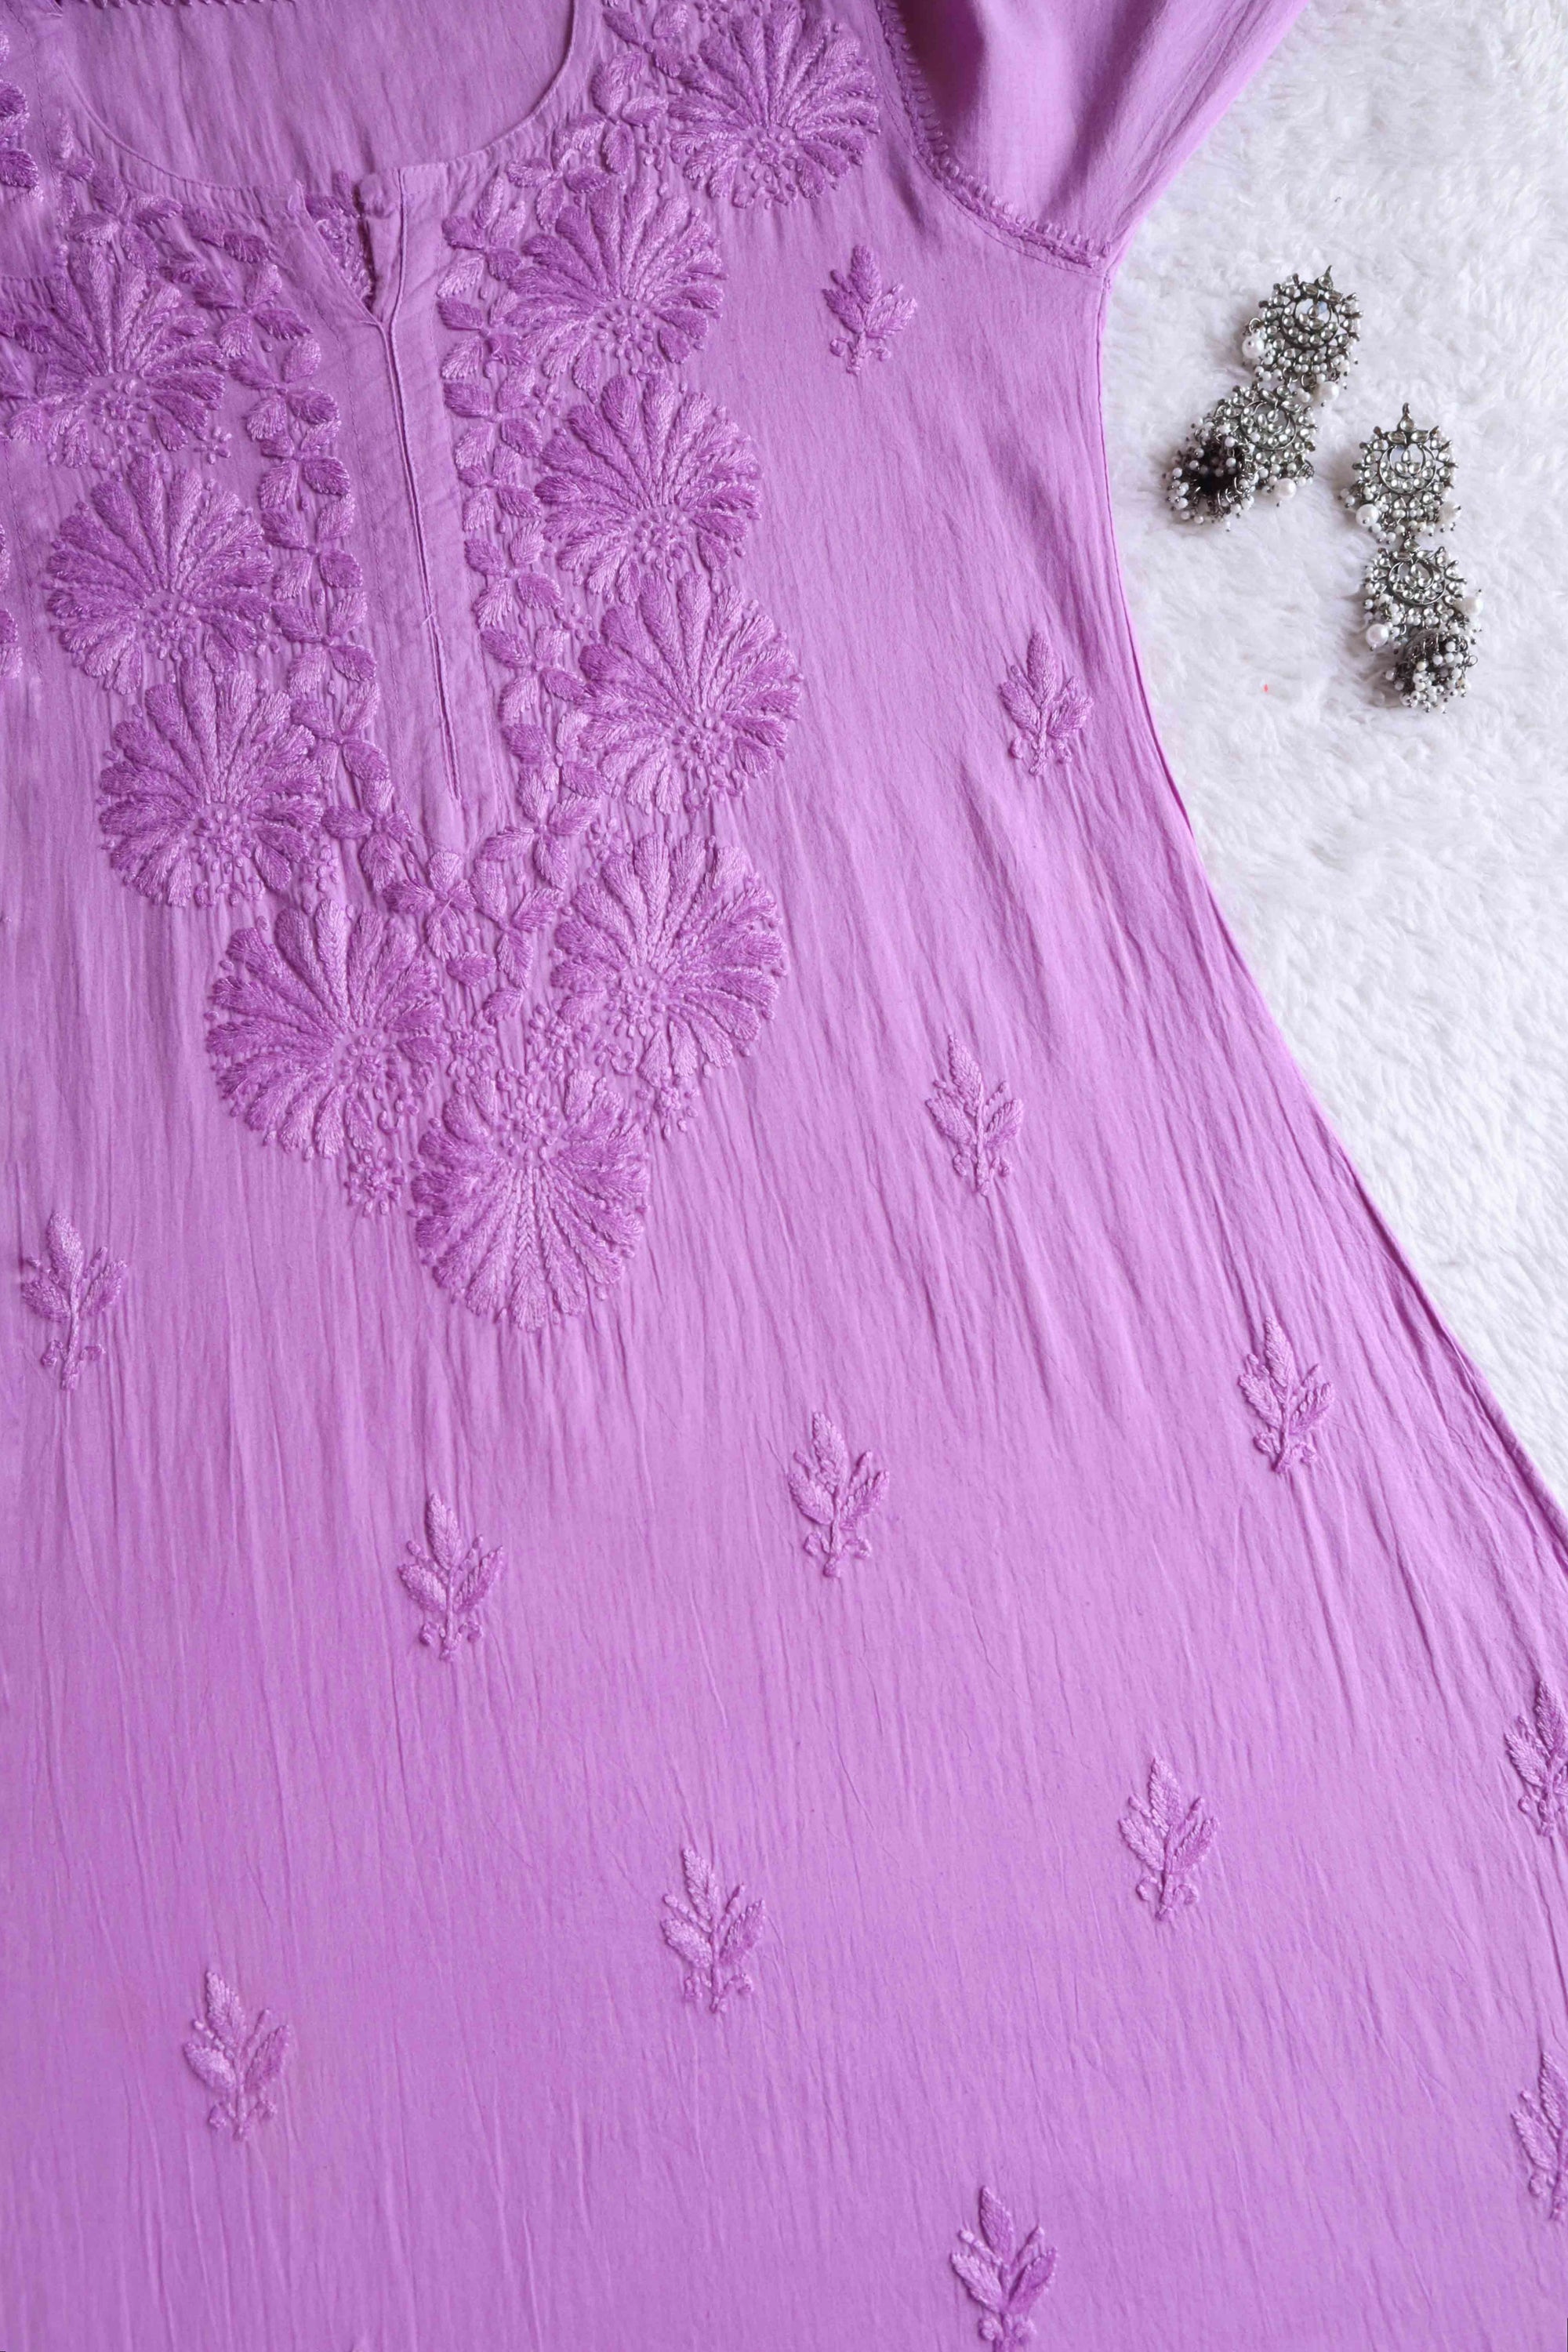 Nazakat Lavender Pure Cotton A-line Dress